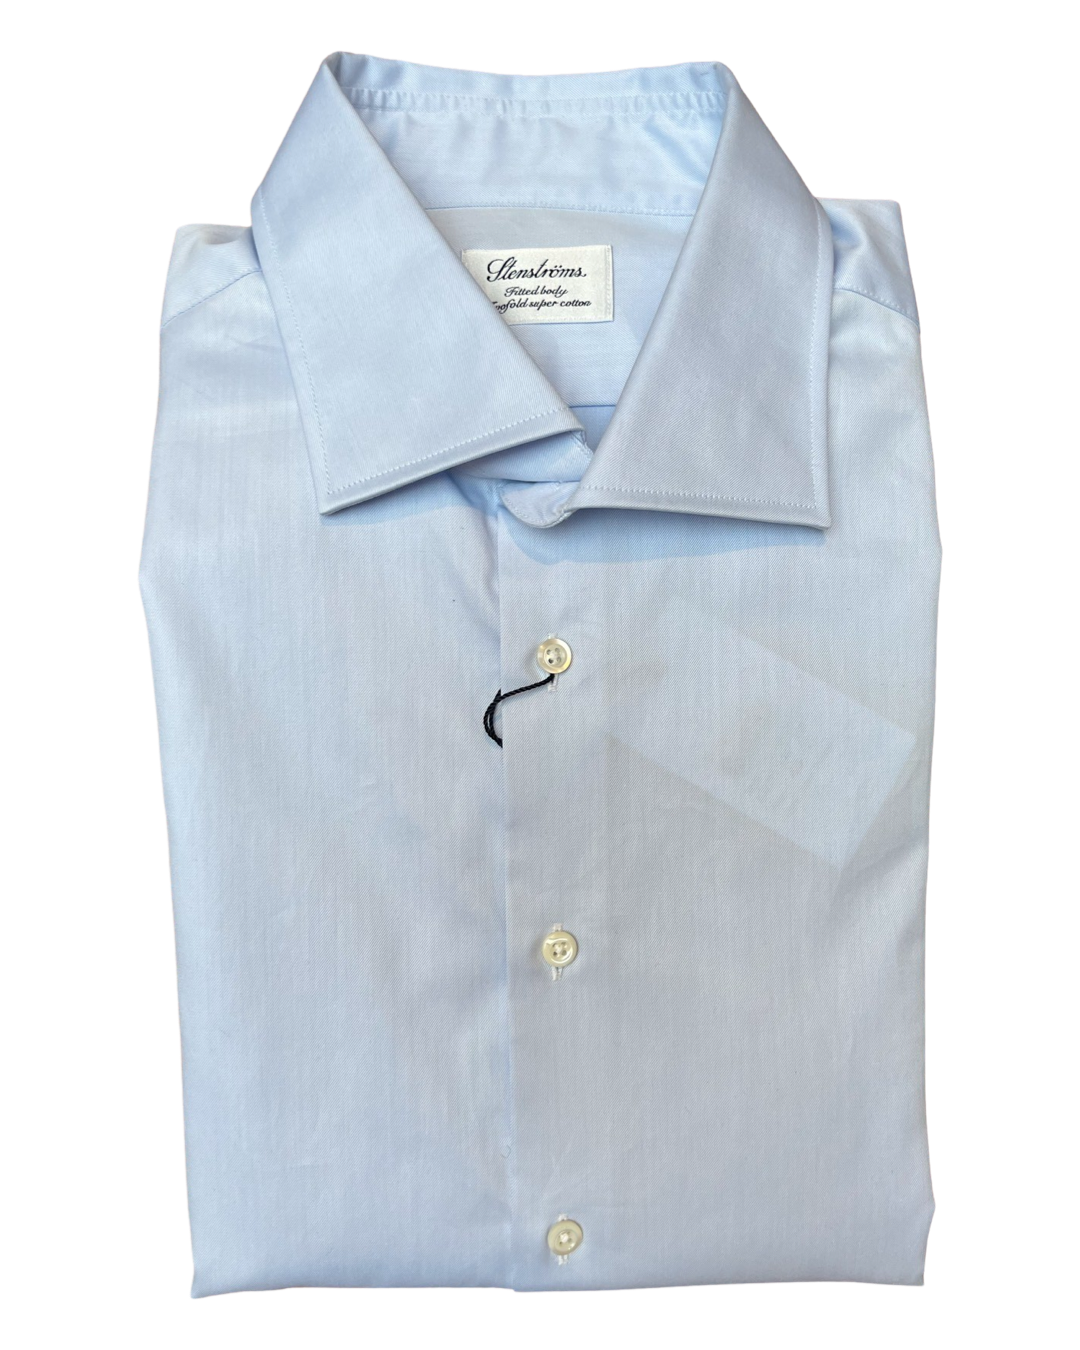 STENSTROMS Plain Blue Shirt